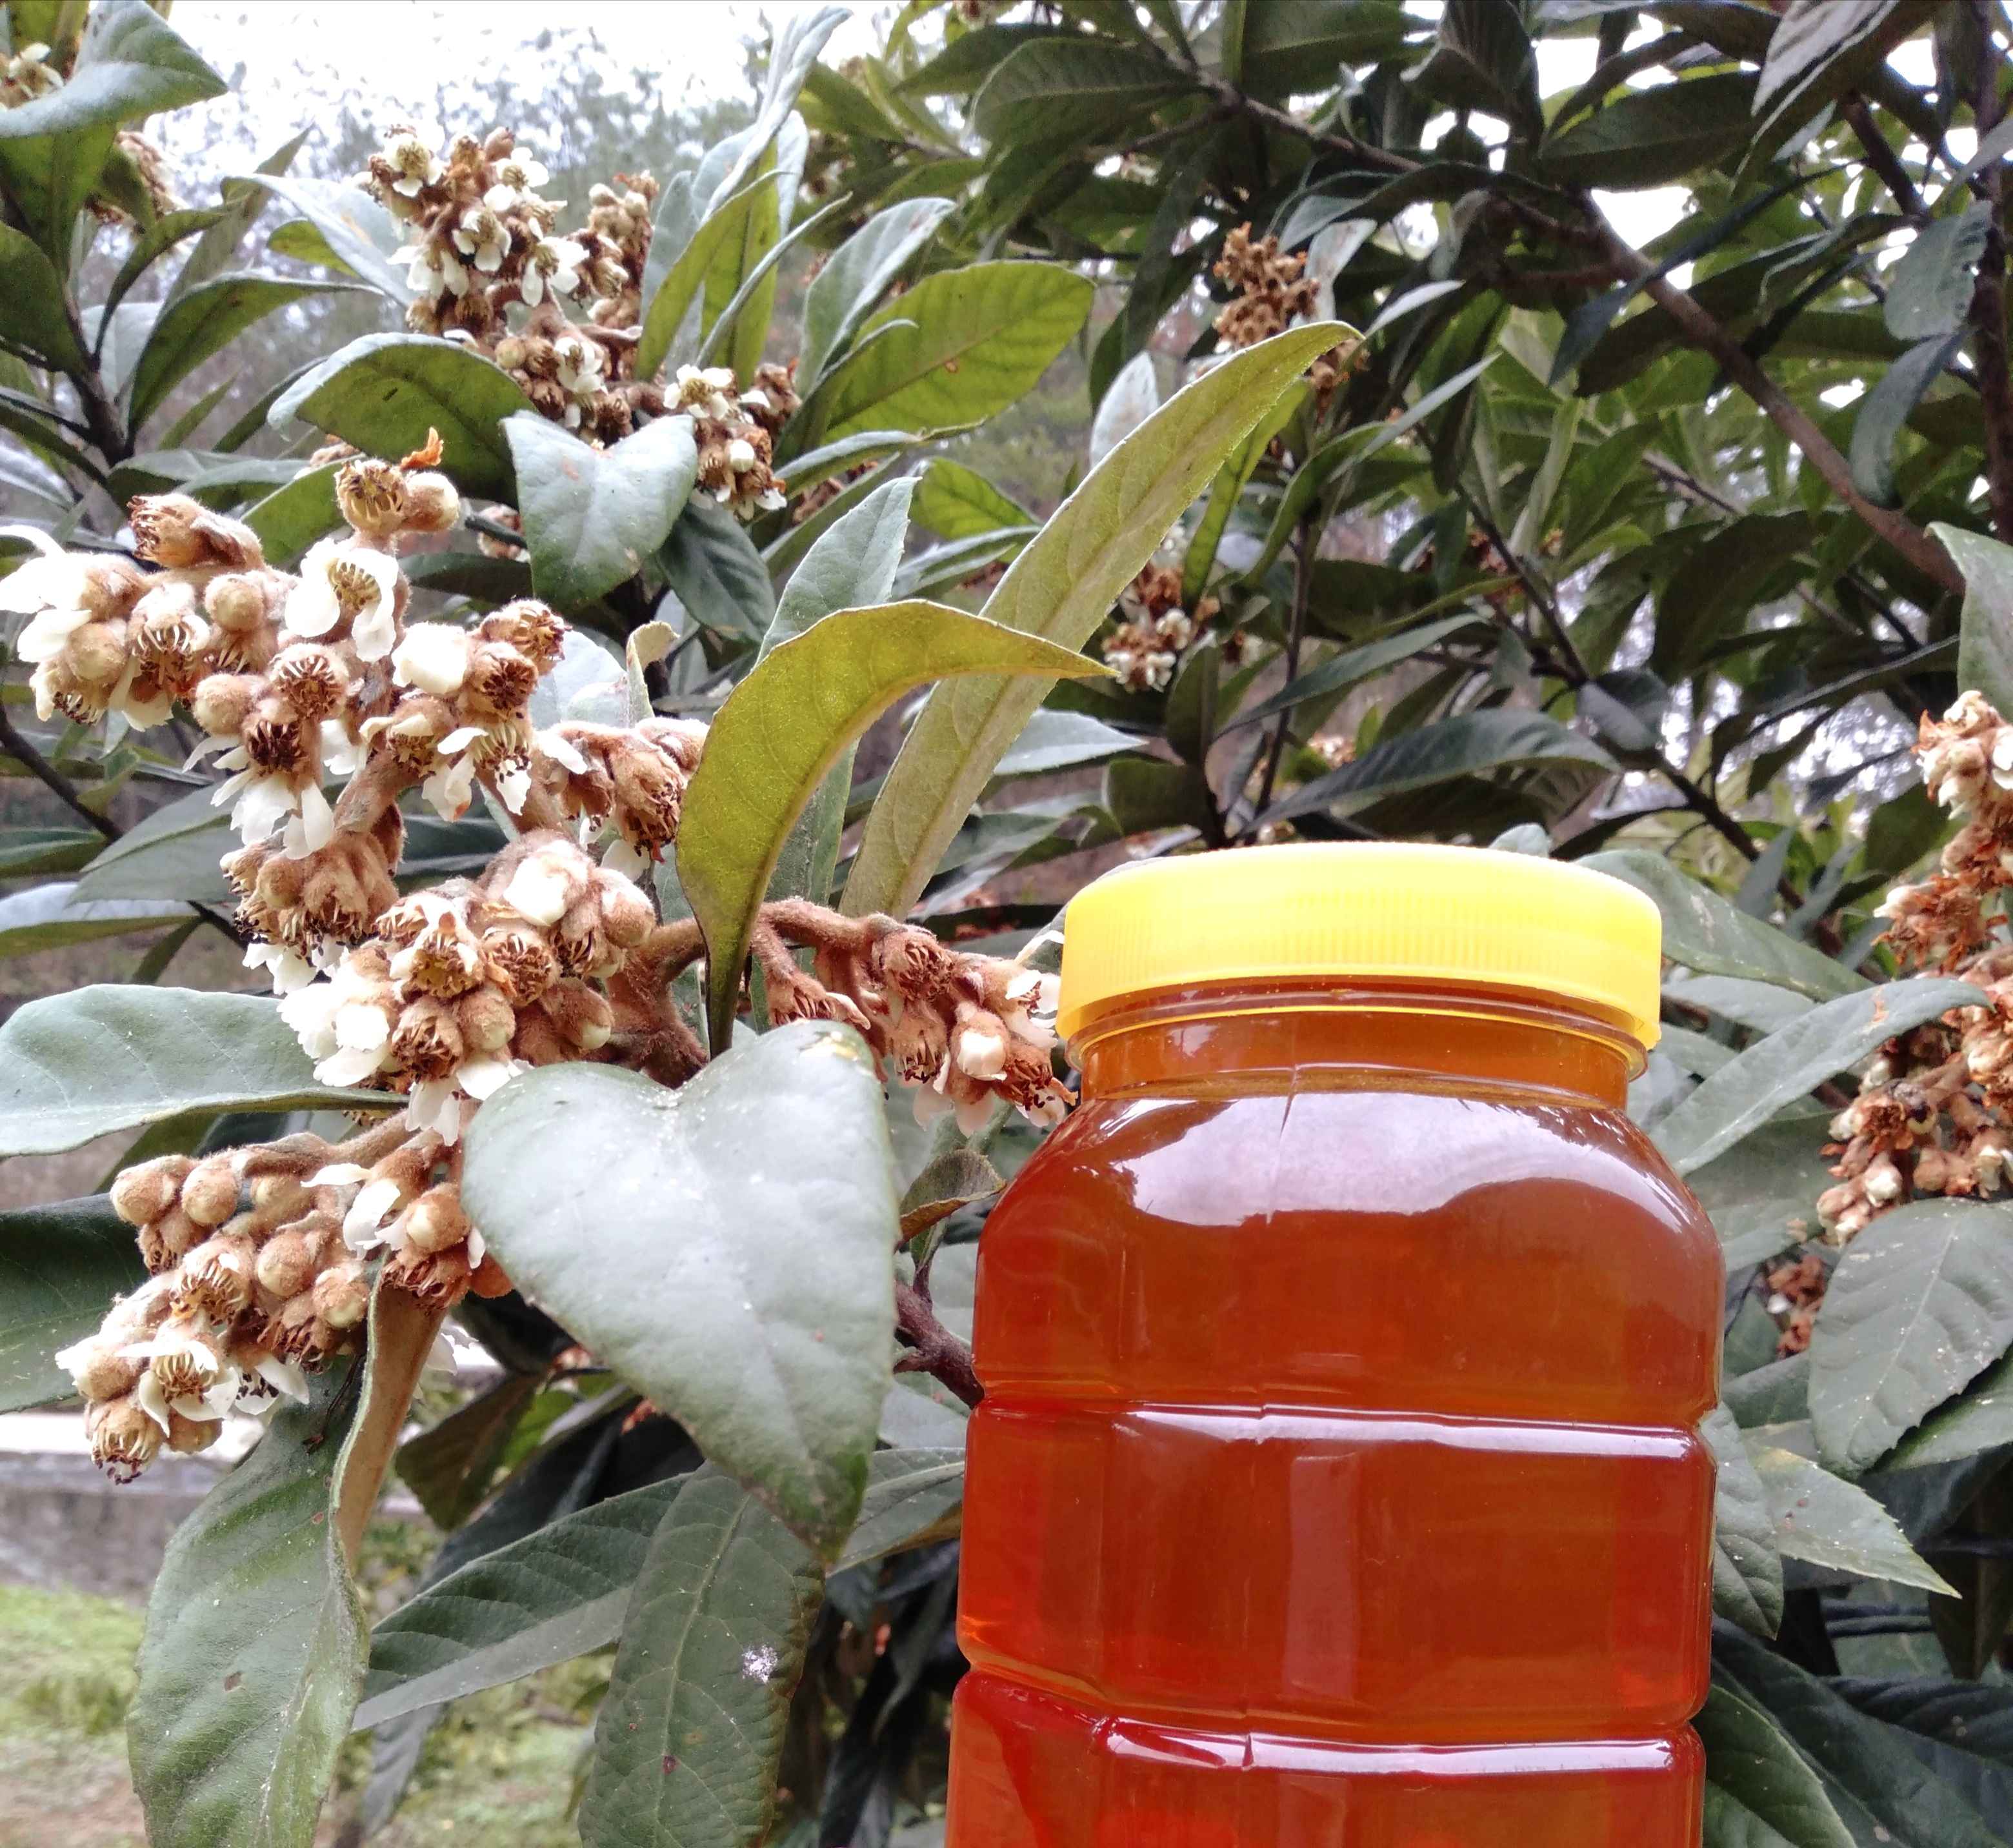 蜂蜜纯正天然土蜂蜜农家自产正宗无添加枇杷蜜 遂月山舍之风采土蜂蜜500g  图